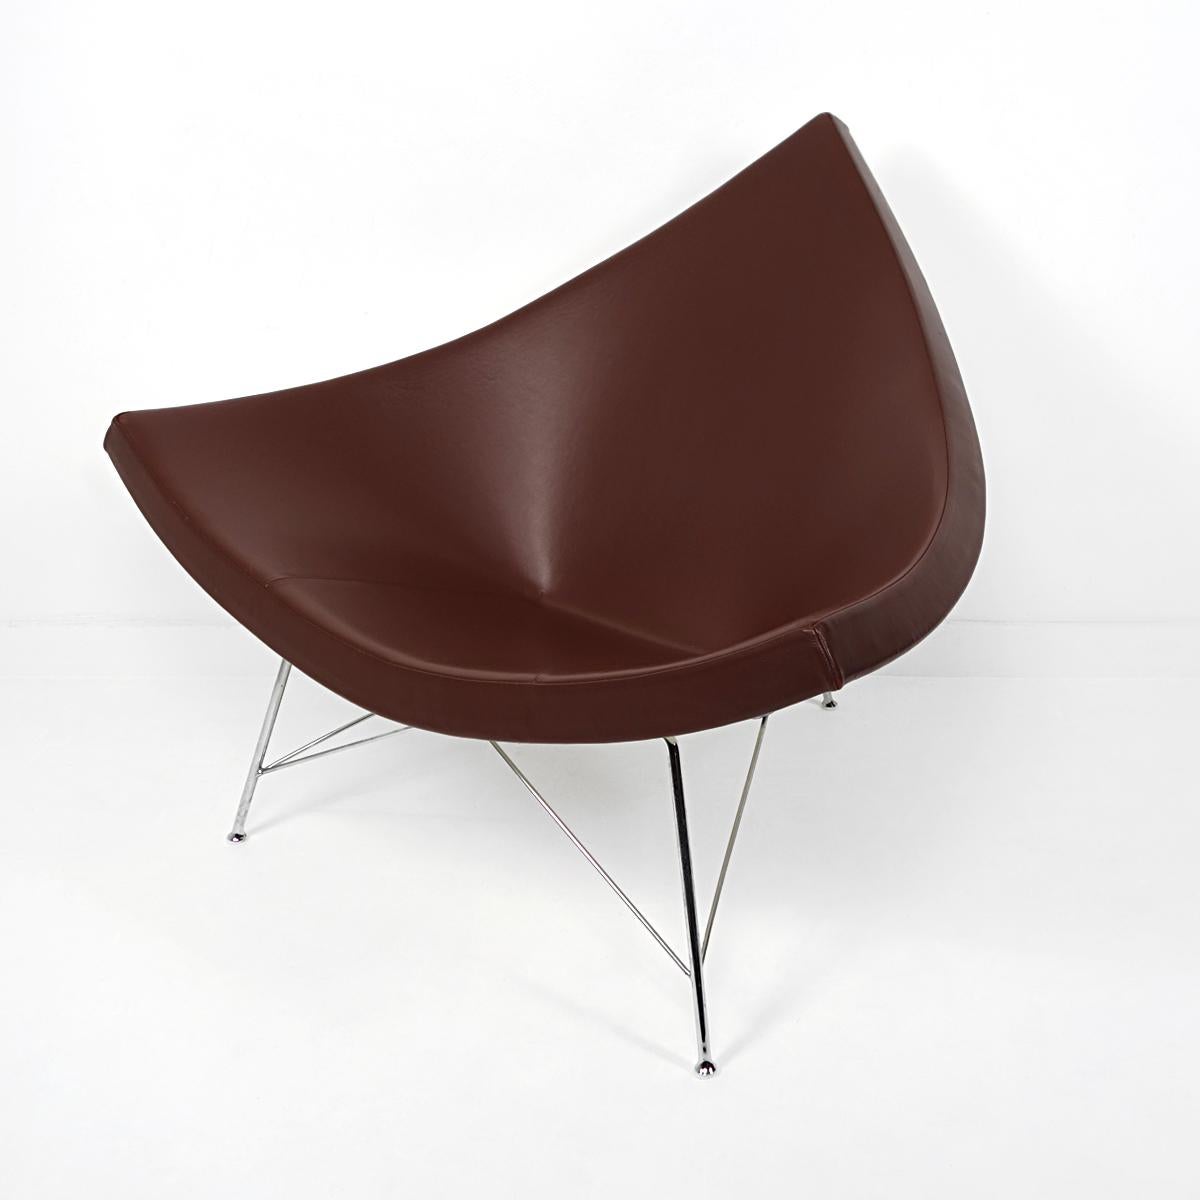 Der Coconut-Stuhl wurde 1955 von dem amerikanischen Architekten, Industriedesigner, Autor, Herausgeber und Lehrer George Nelson entworfen. Offensichtlich hat er sich dabei von einer in Stücke geschnittenen Kokosnuss inspirieren lassen.

Dieser